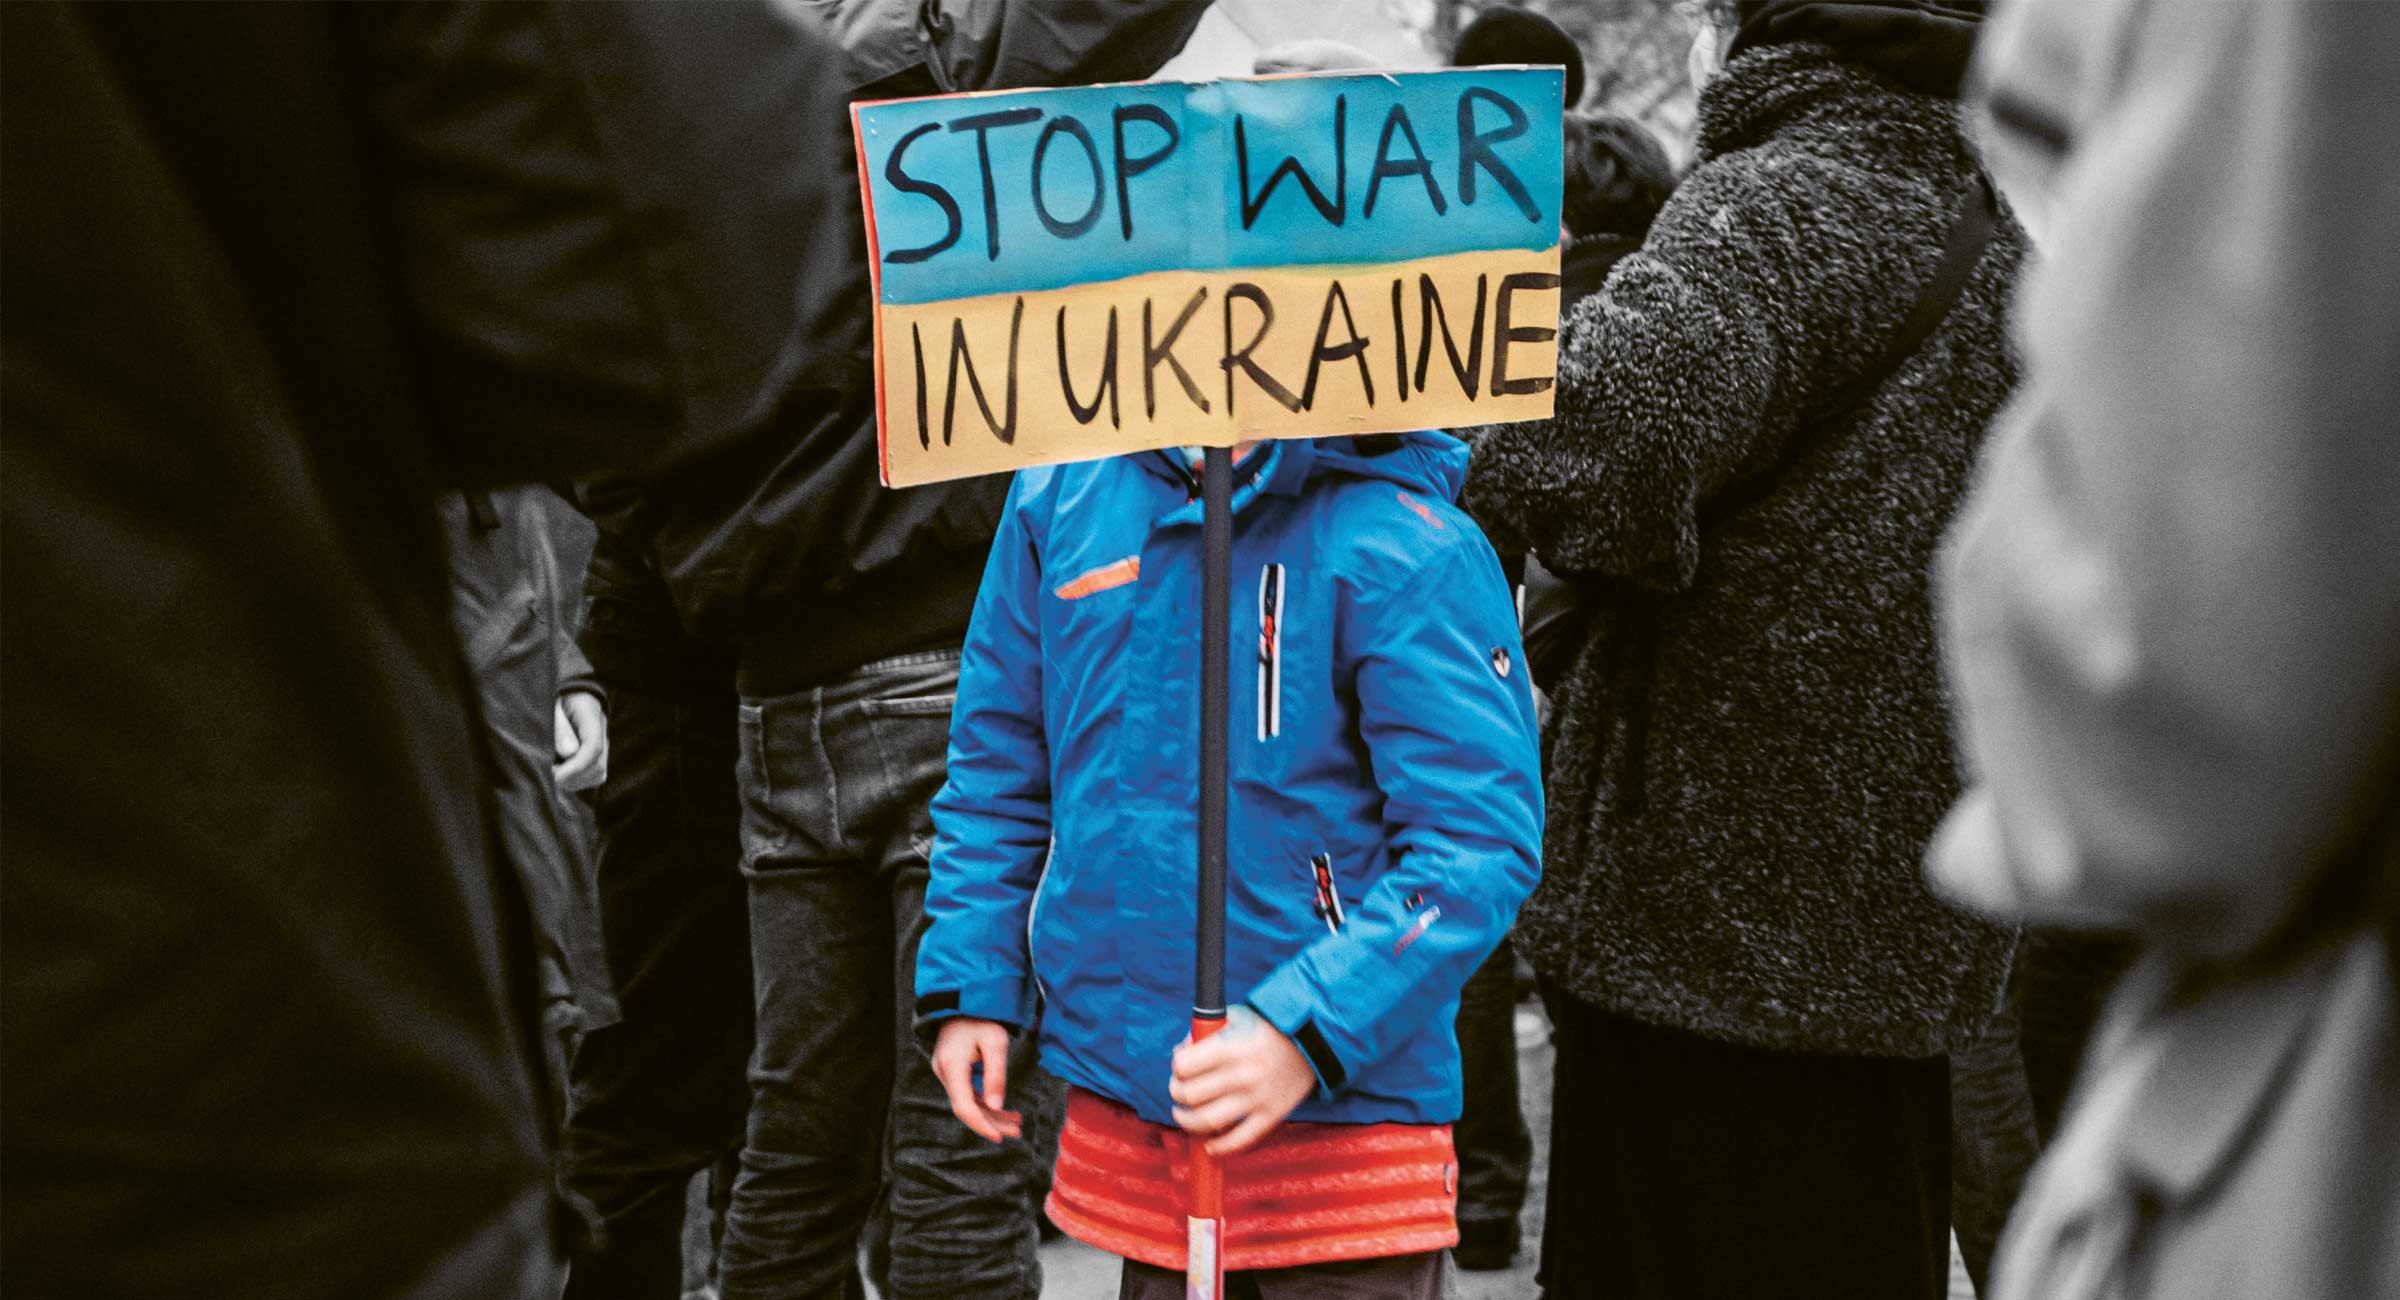 Ein Schild mit der Aufschrift "Stop War in Ukraine".